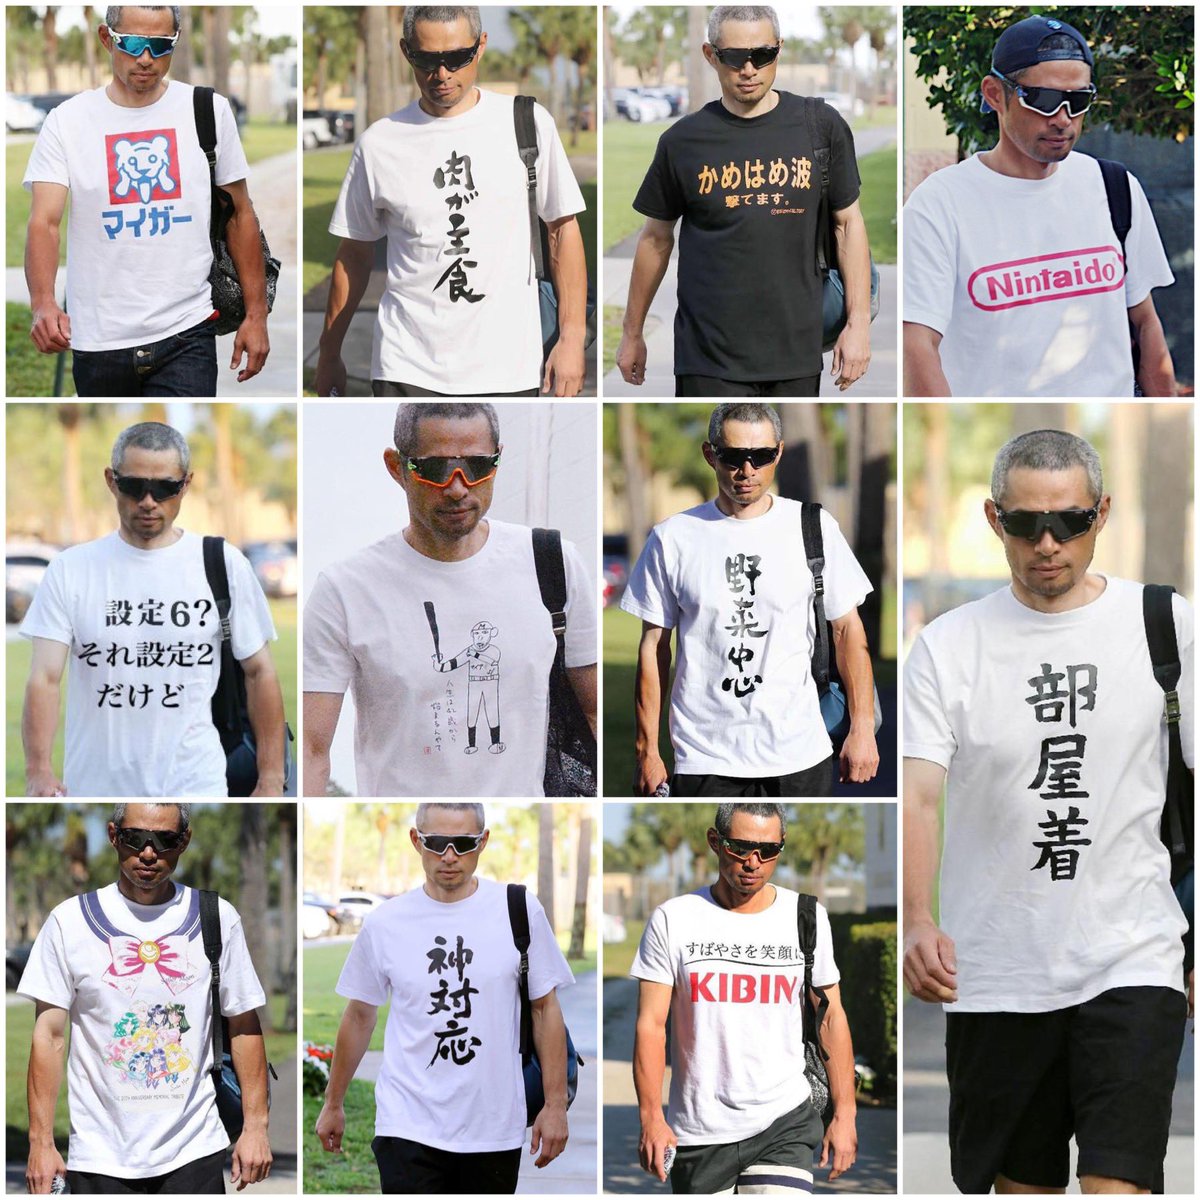 外国人はなんで変な日本語tシャツ着るのか ふたまと